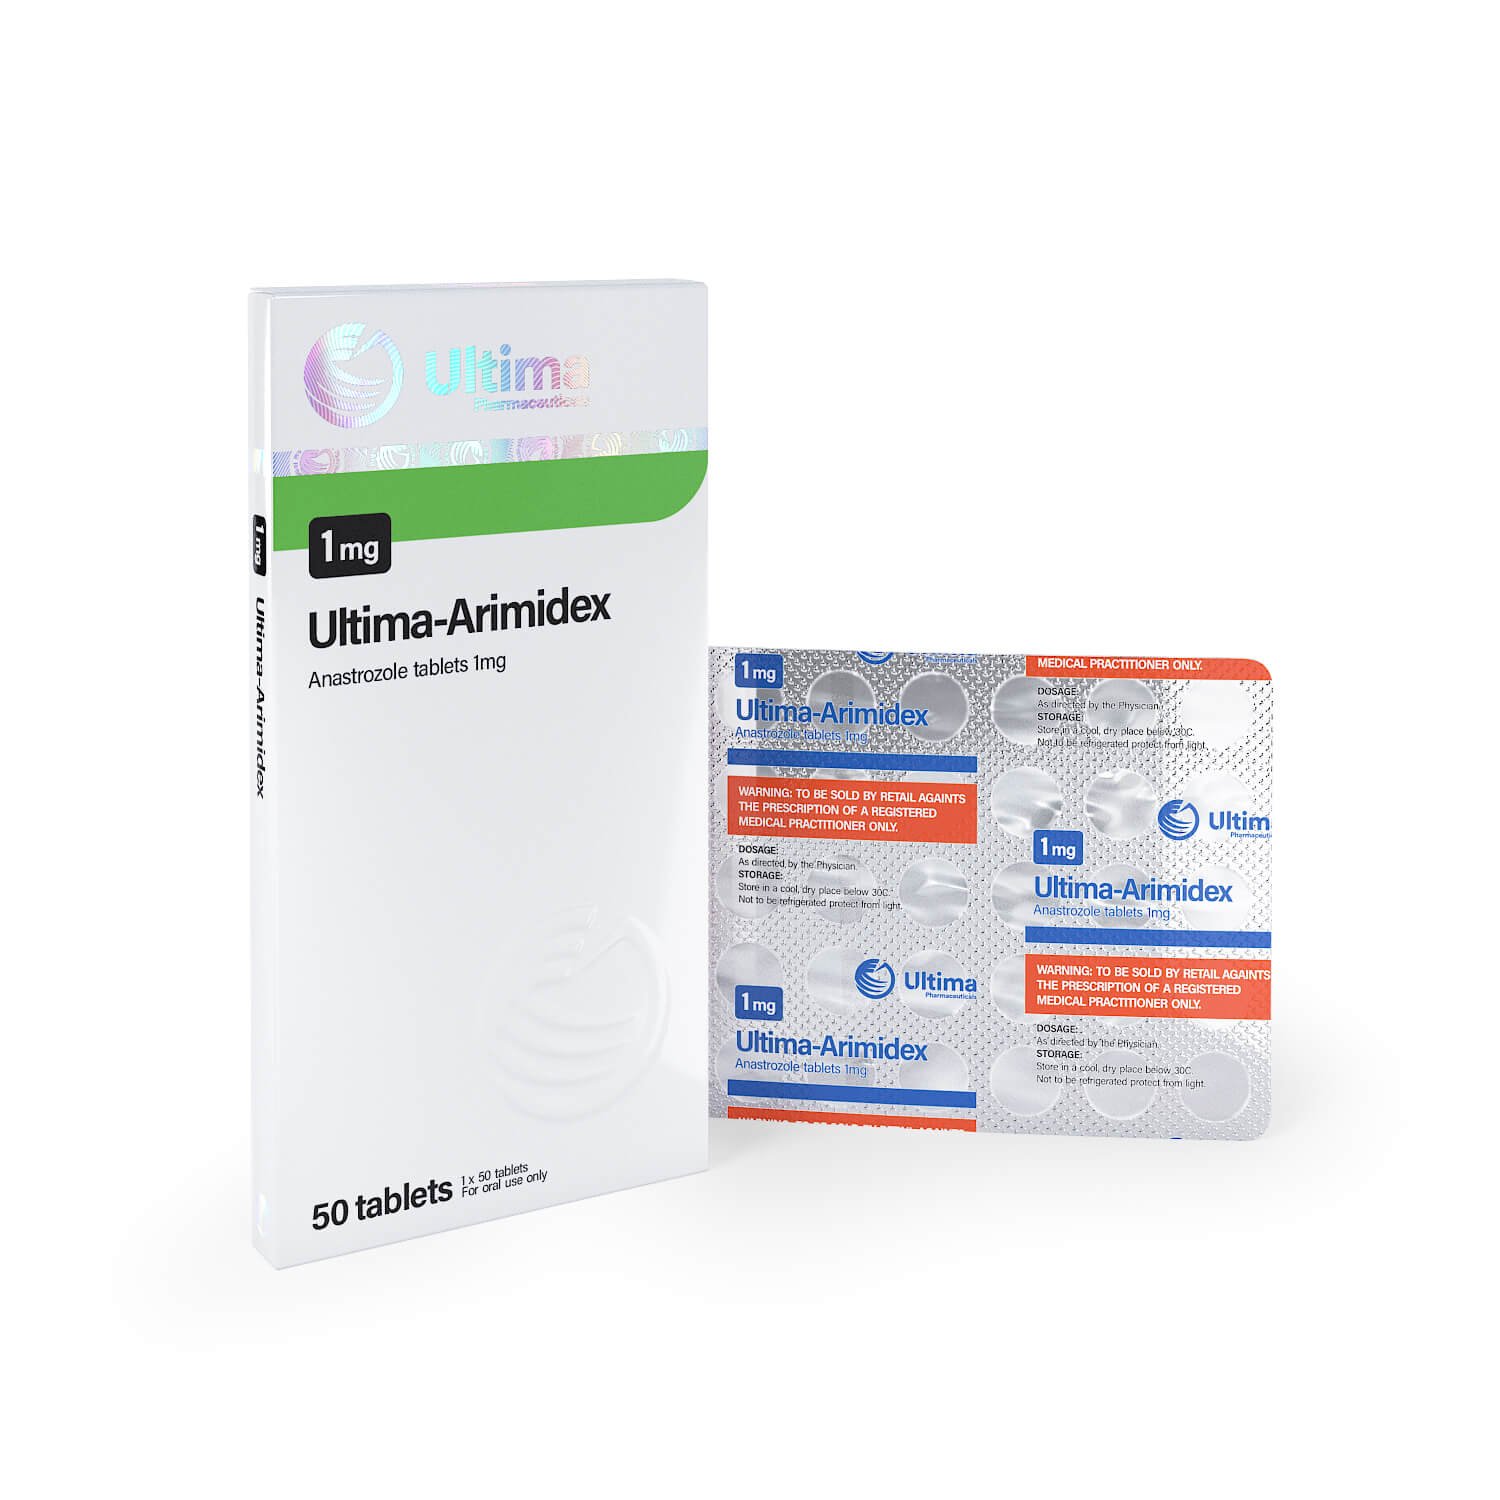 ultima-anastro-50-pastillas-x-1-mg